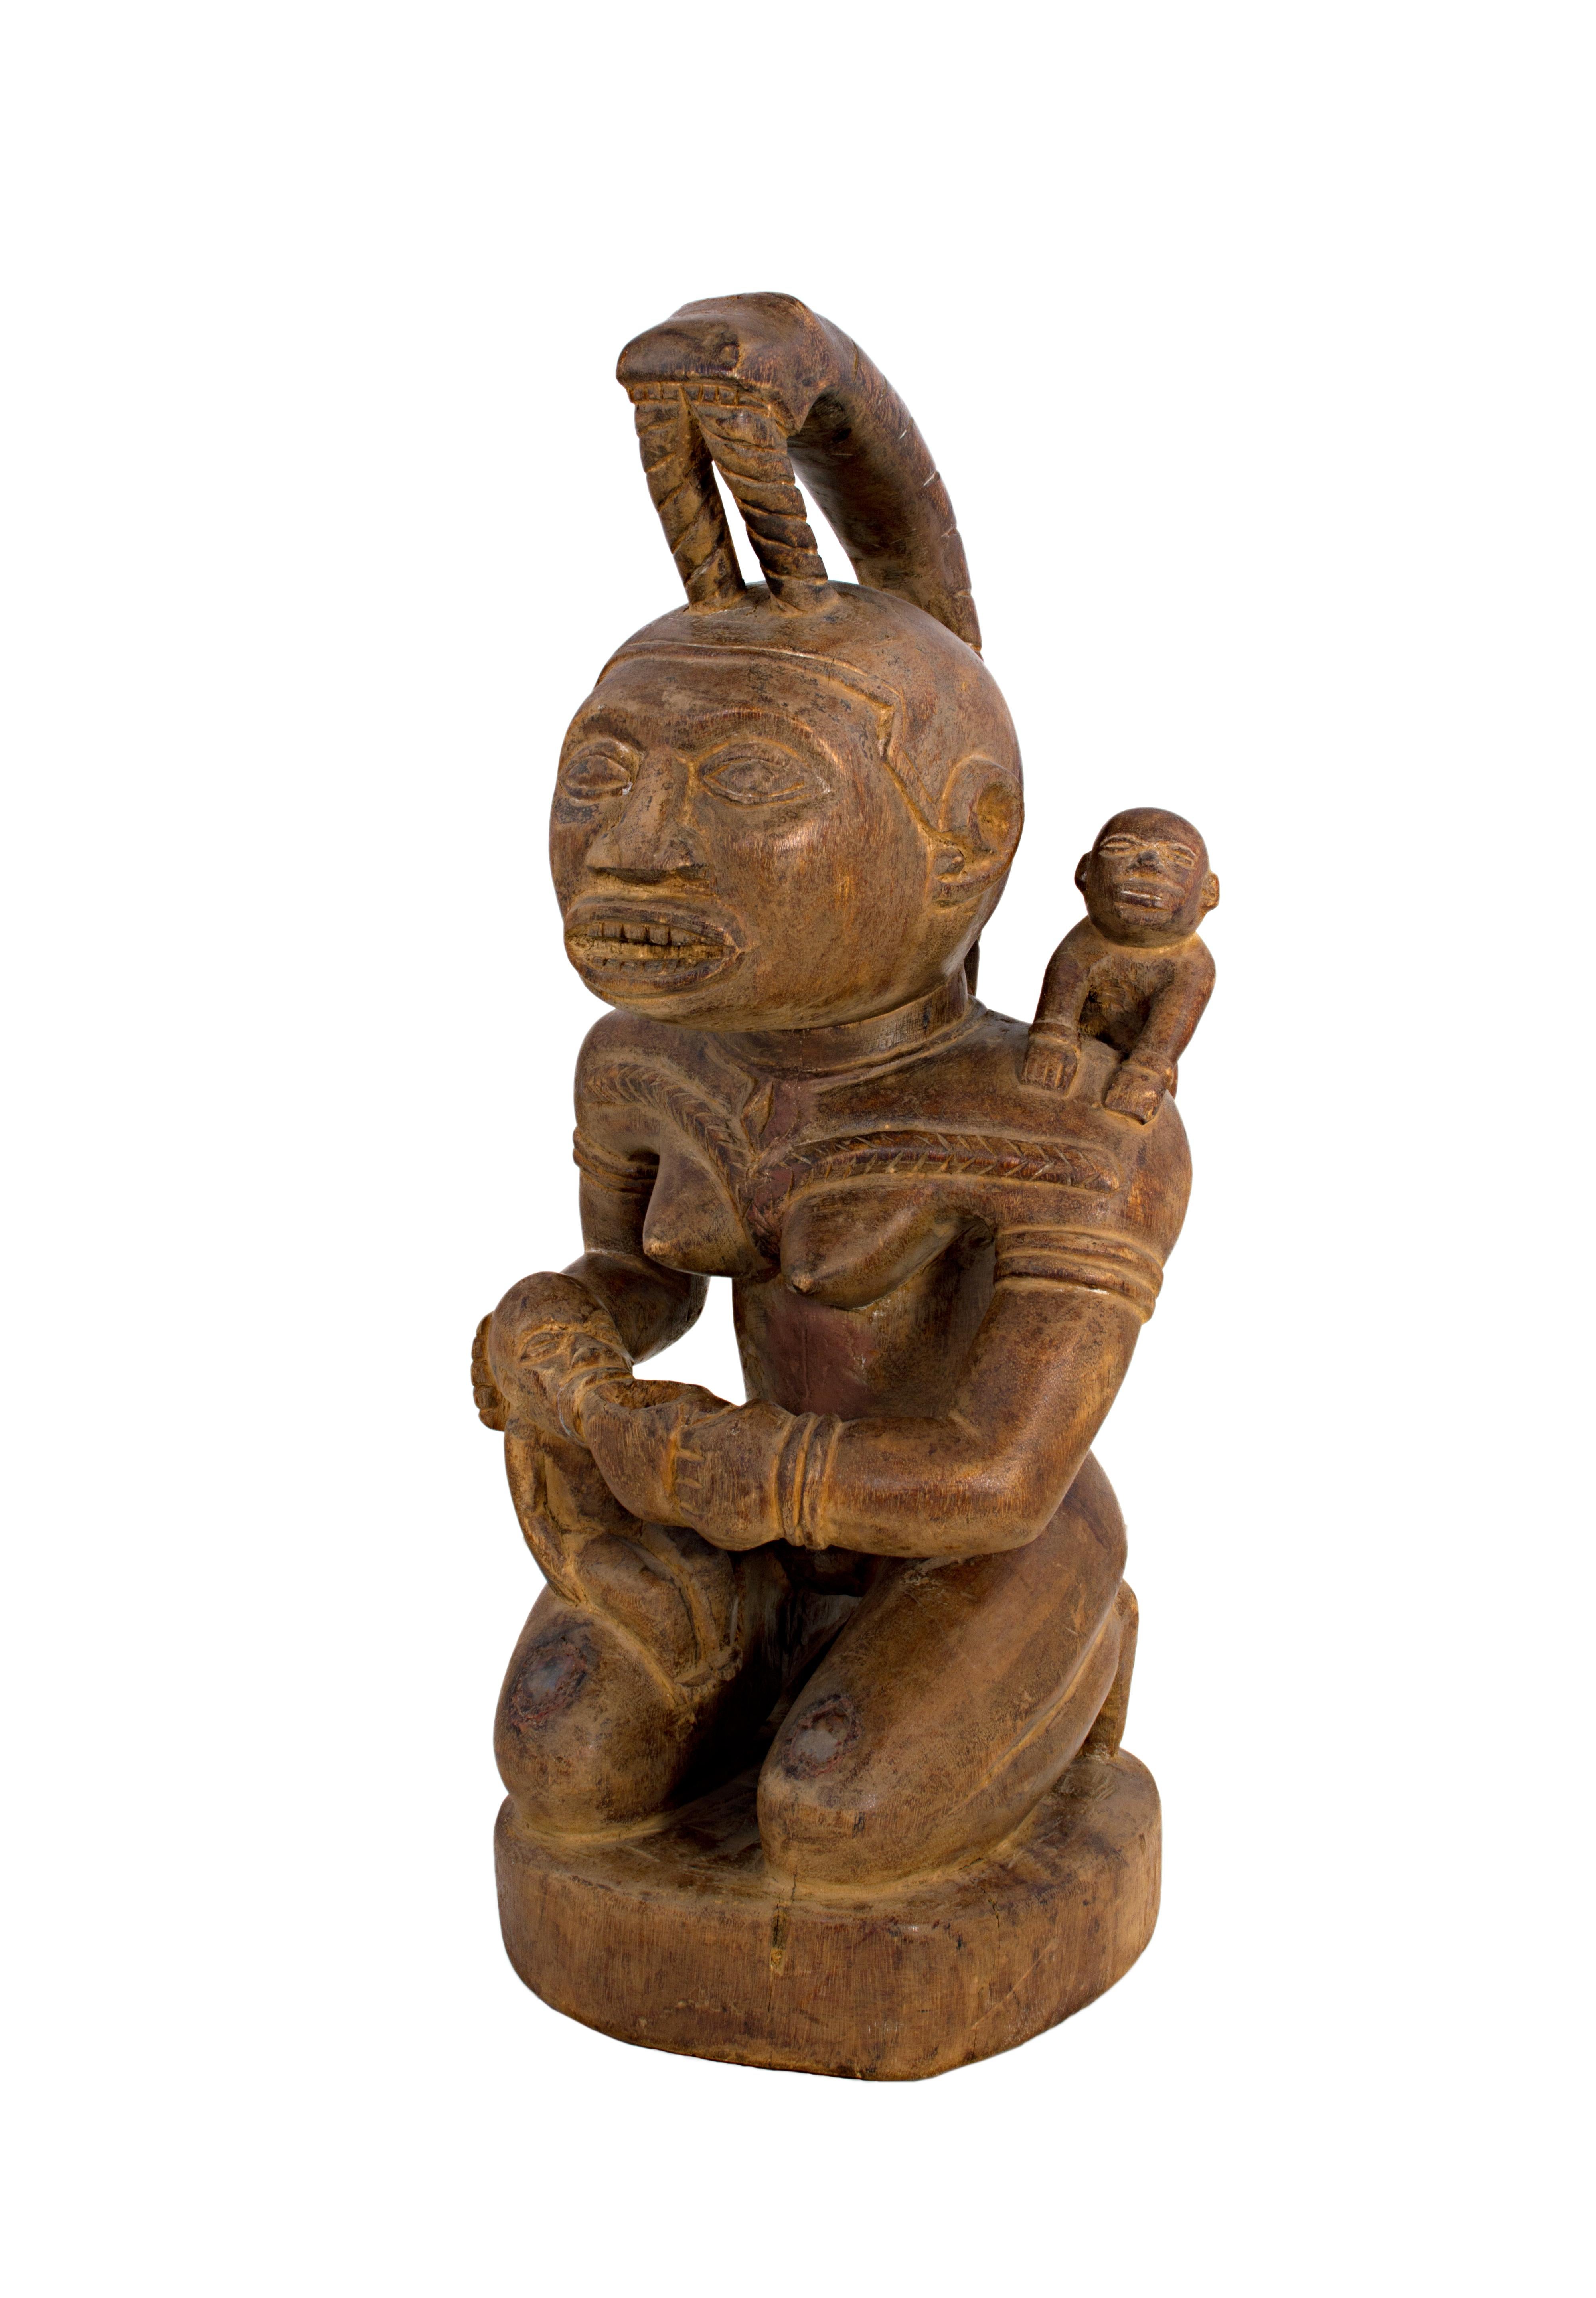 Unknown Figurative Sculpture - "Maternity-Bacongo, Zaire, " created in the Democratic Republic of Congo c. 1940